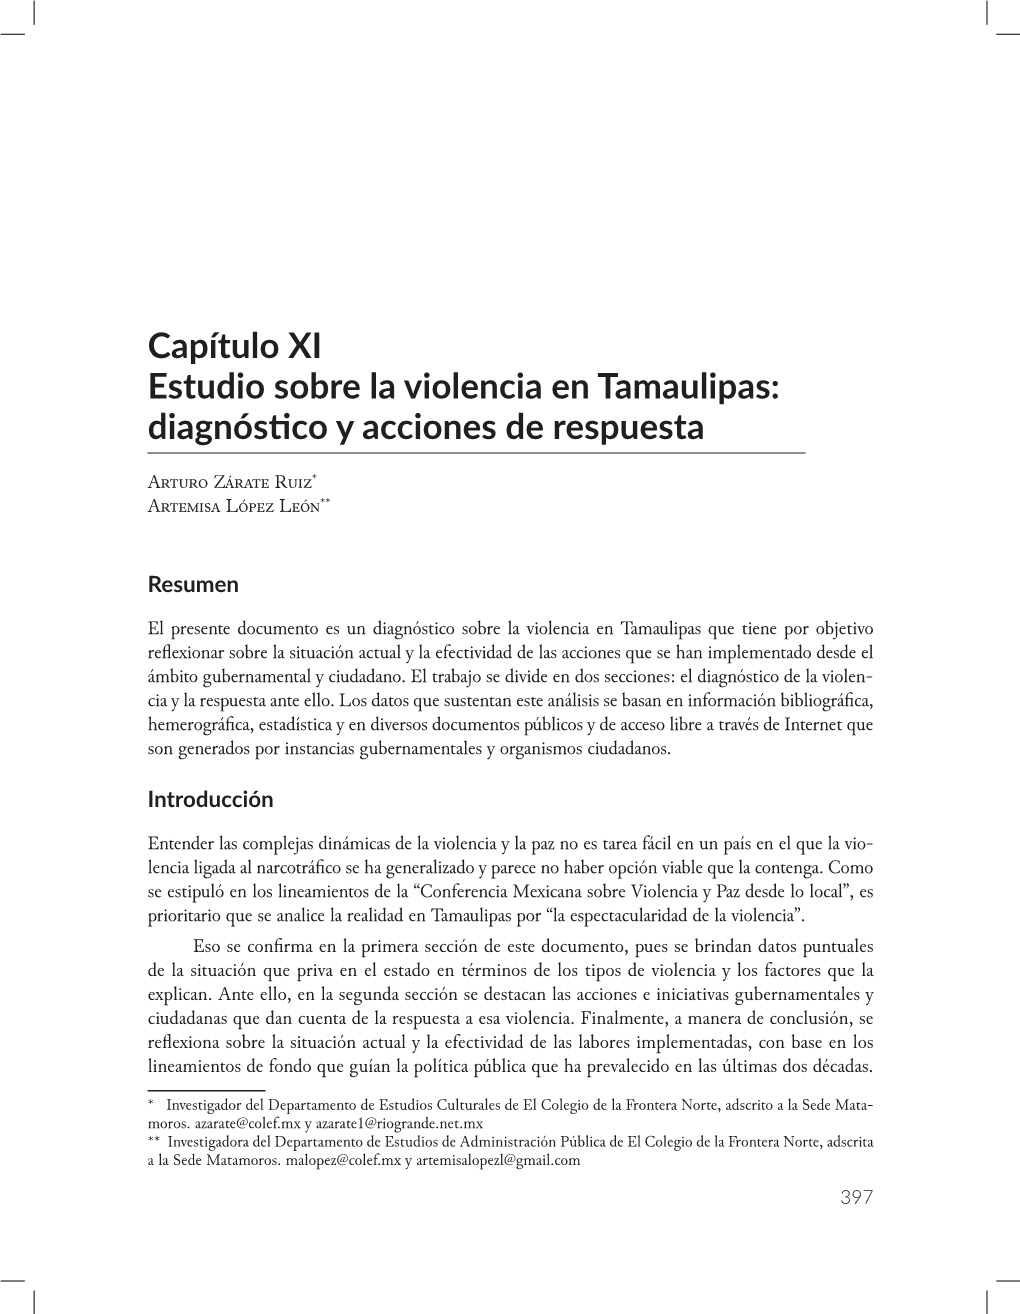 Capítulo XI Estudio Sobre La Violencia En Tamaulipas: Diagnóstico Y Acciones De Respuesta